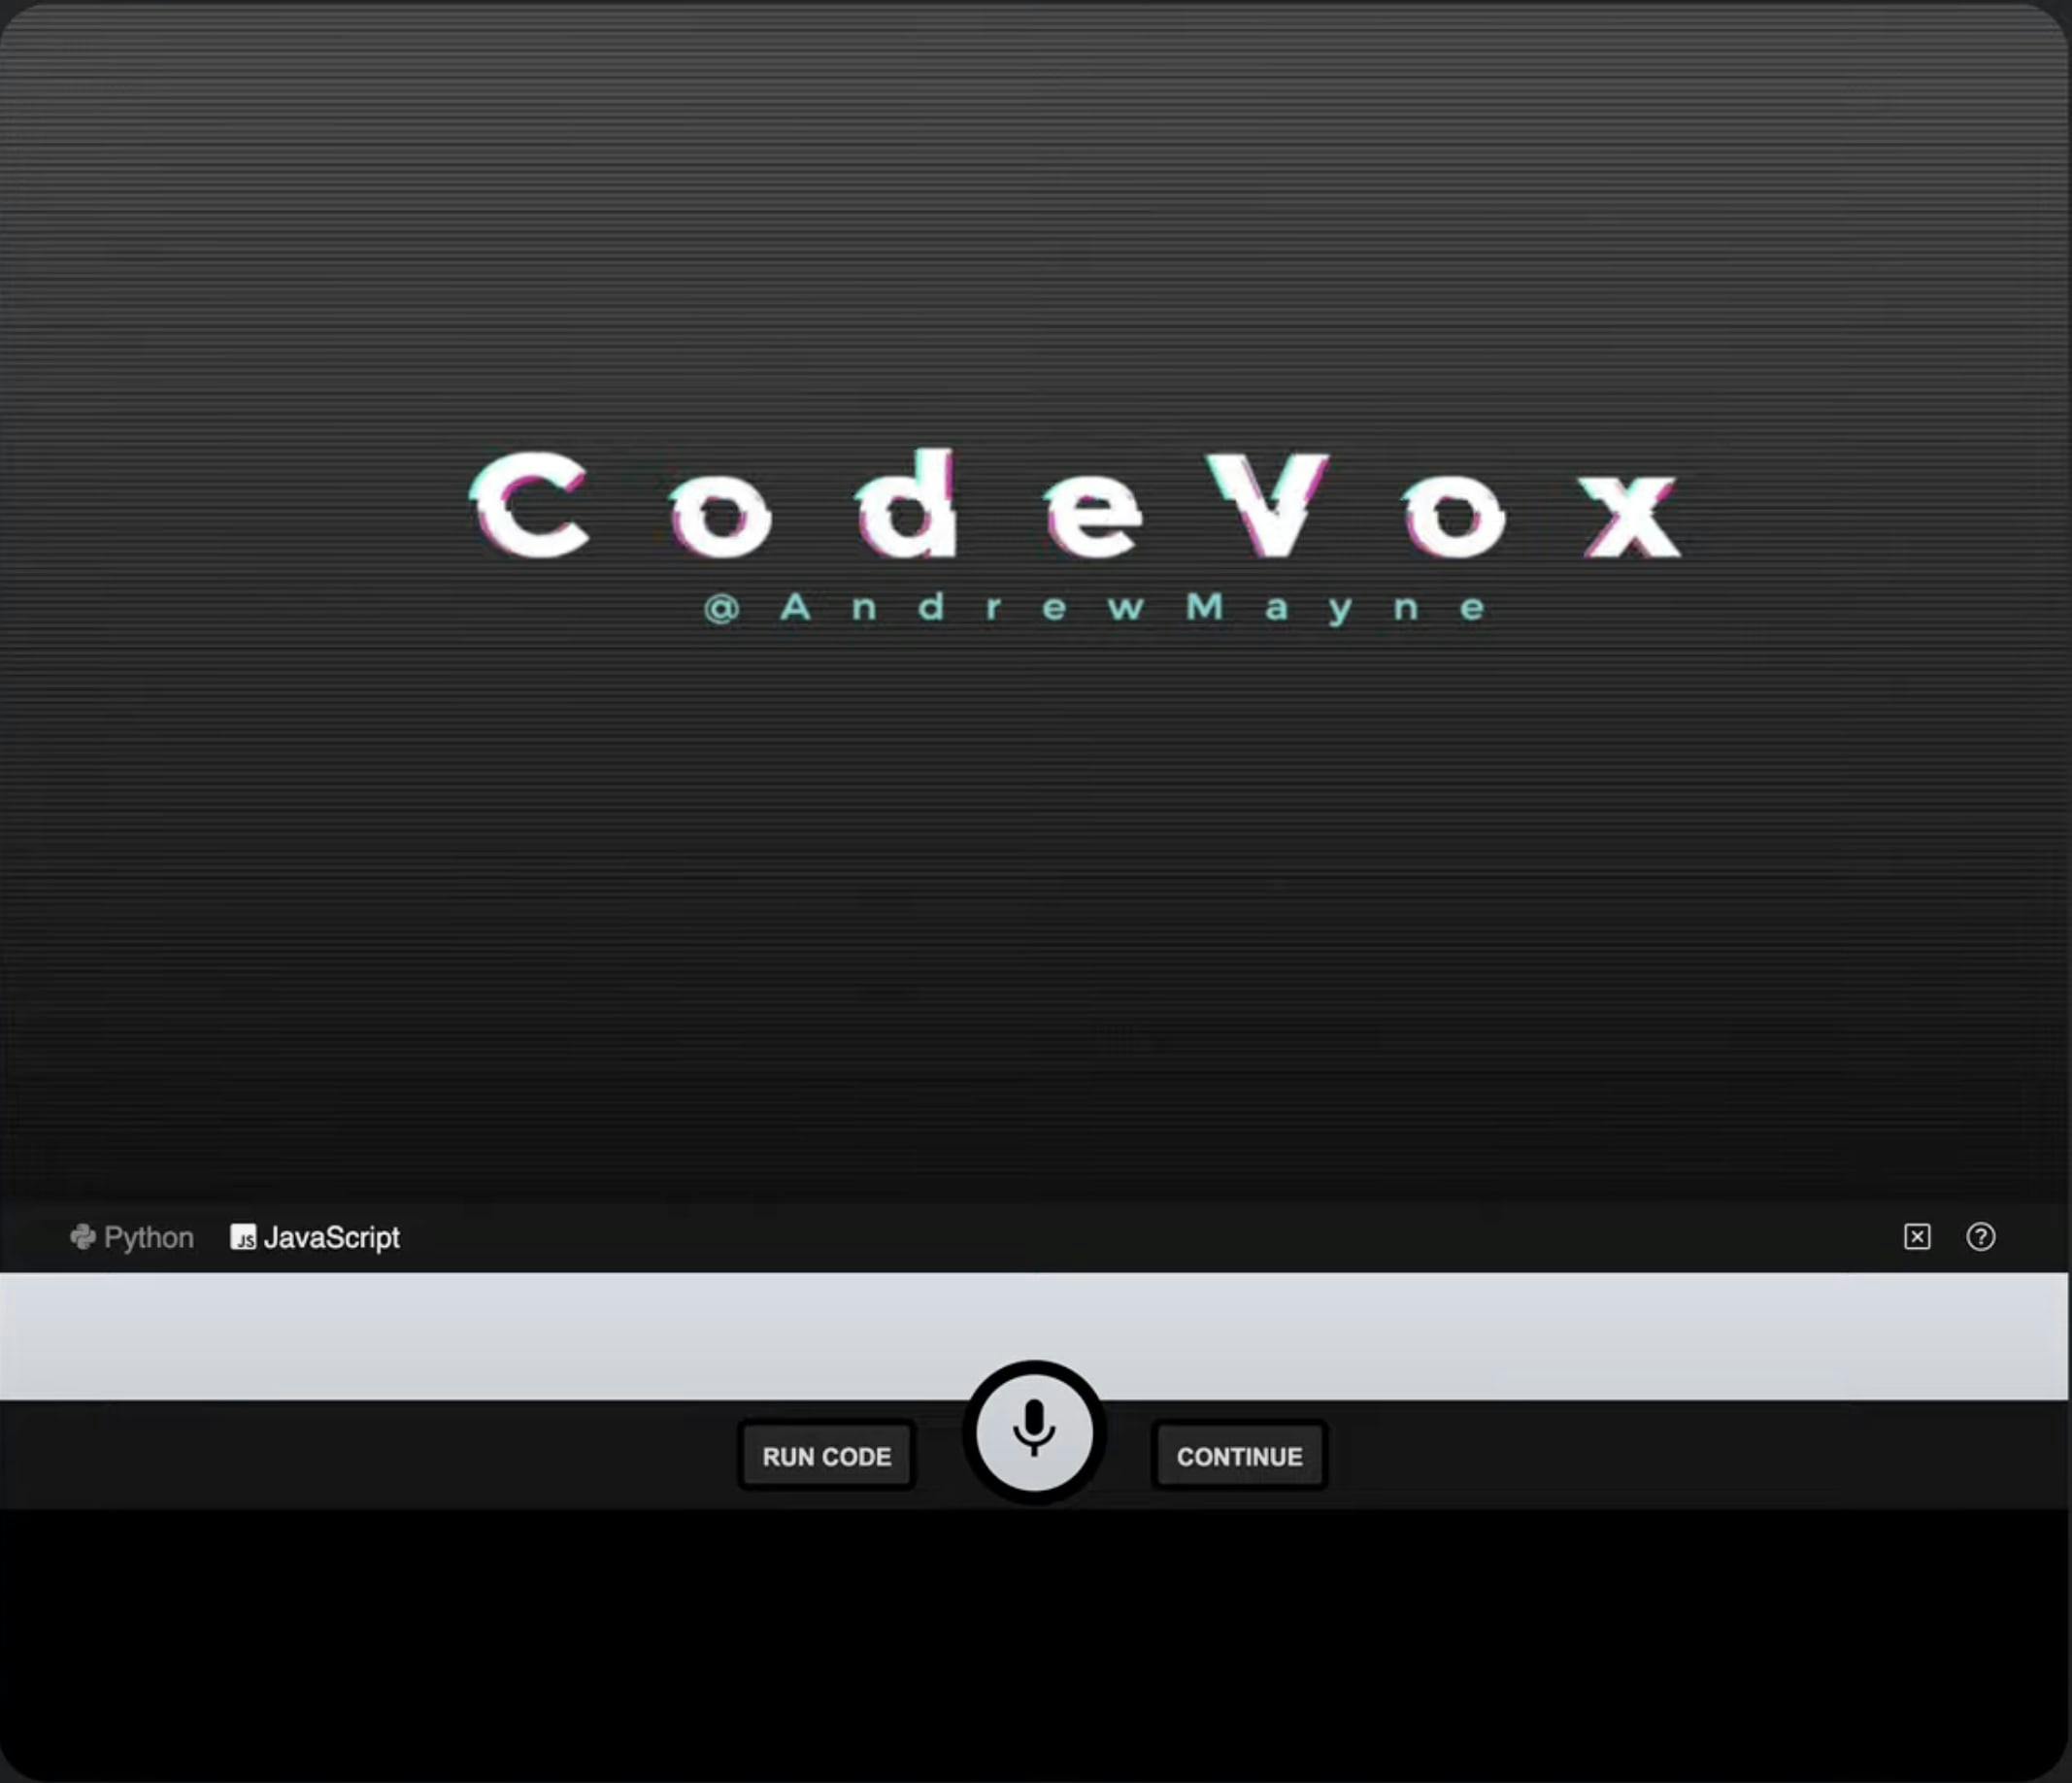 CodeVox